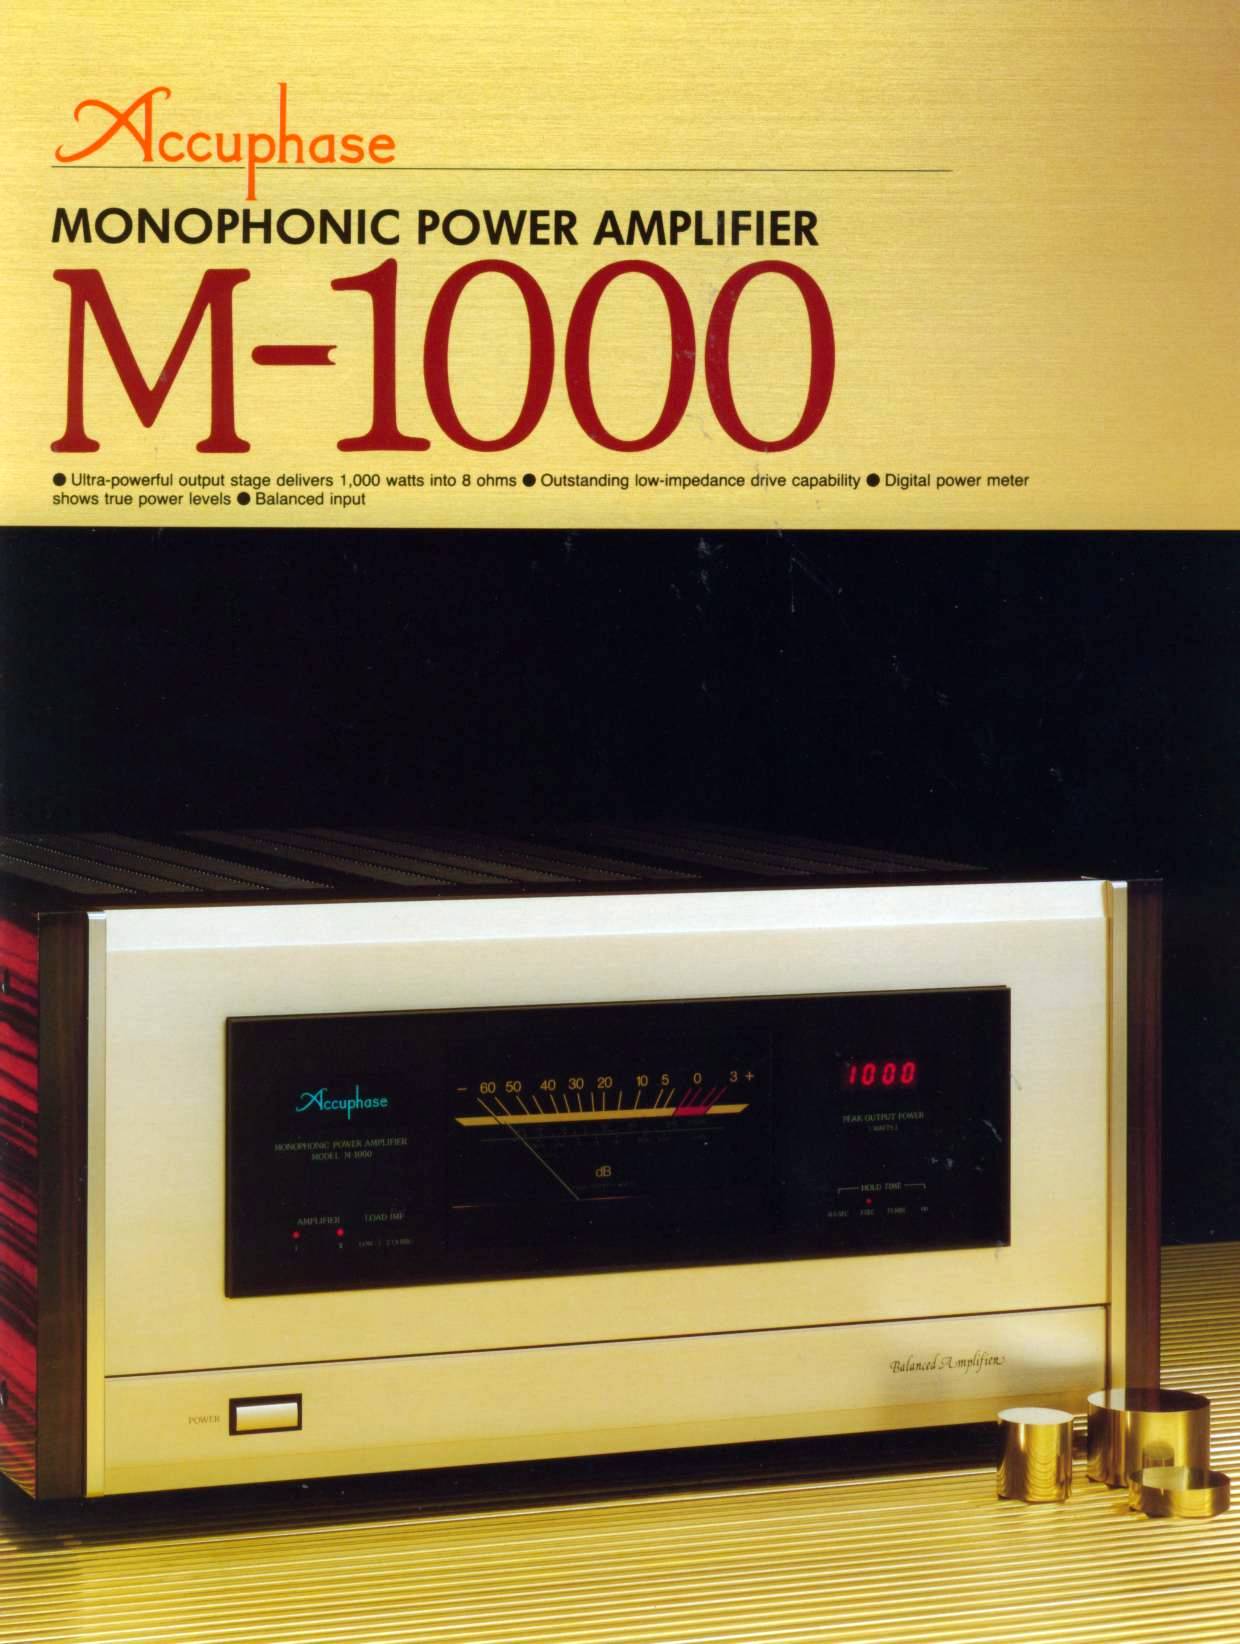 Accuphase M-1000-Prospekt-1987.jpg